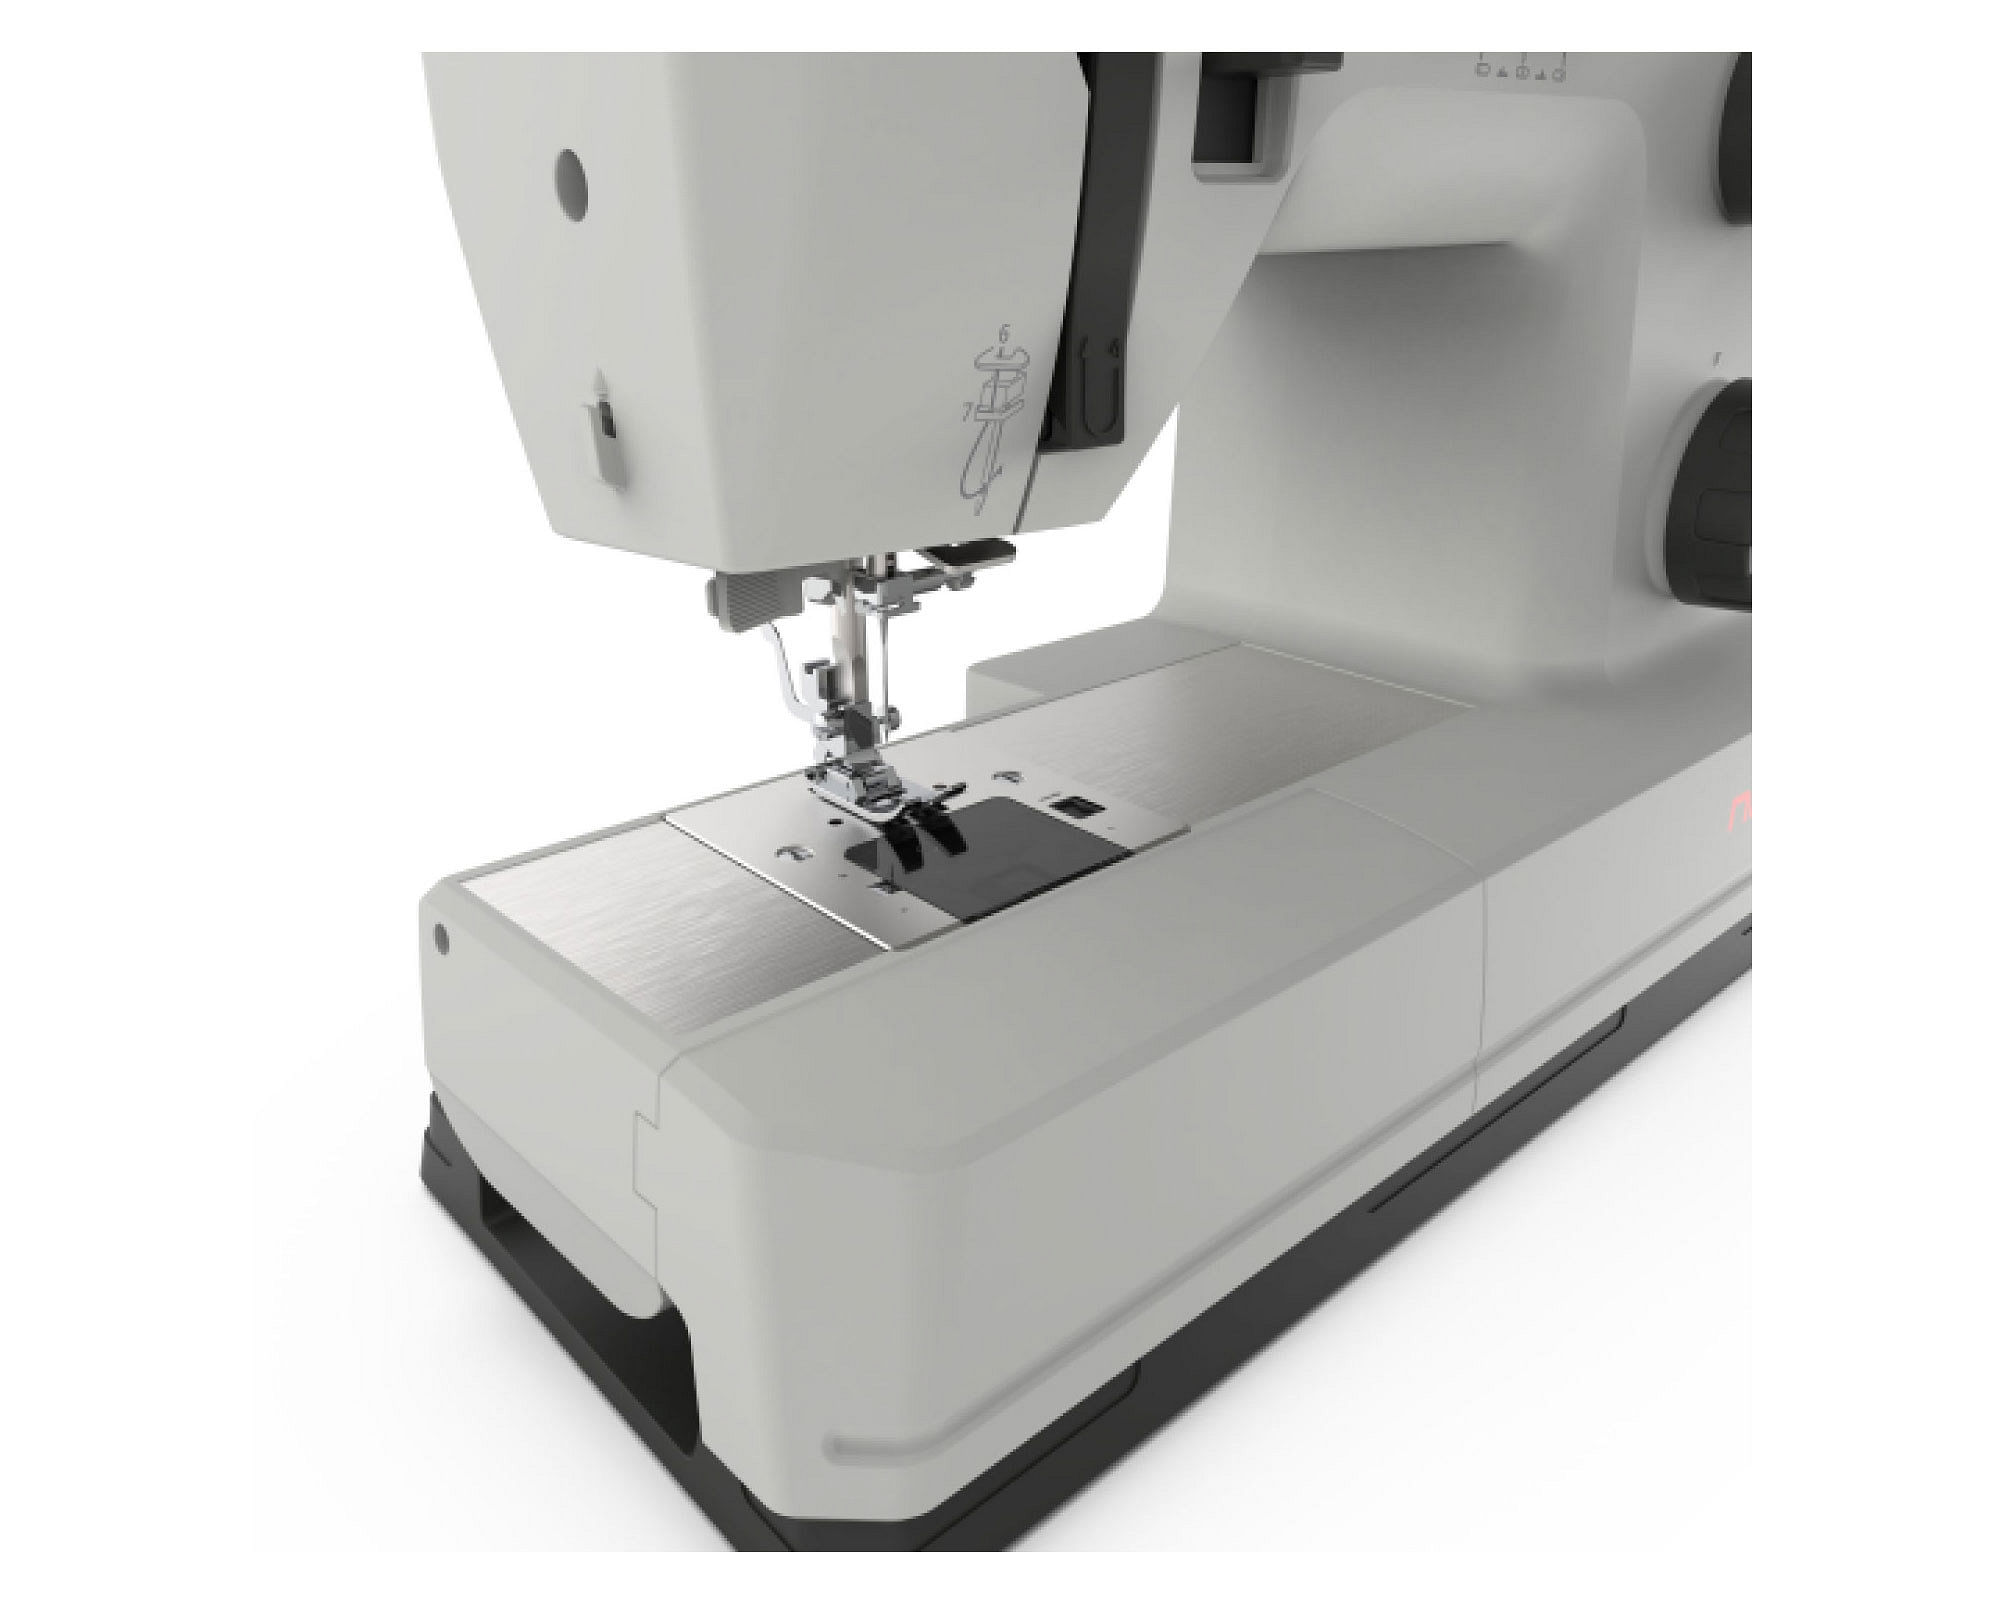  JinQiu 1 máquina de coser manual pequeña, máquina de